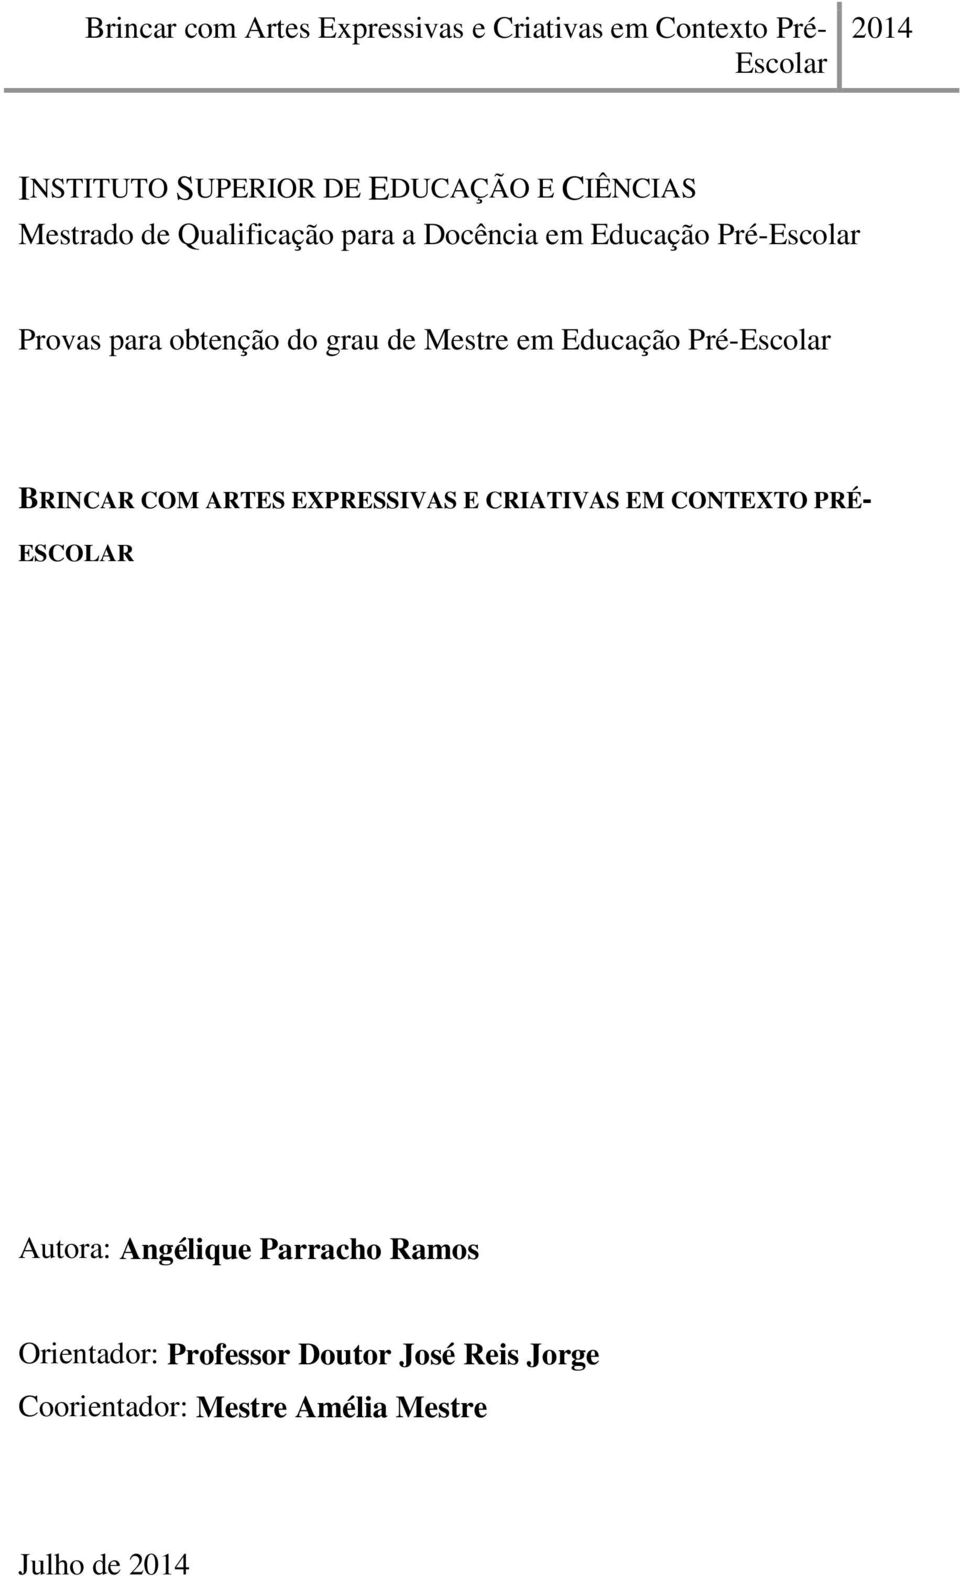 BRINCAR COM ARTES EXPRESSIVAS E CRIATIVAS EM CONTEXTO PRÉ- ESCOLAR Autora: Angélique